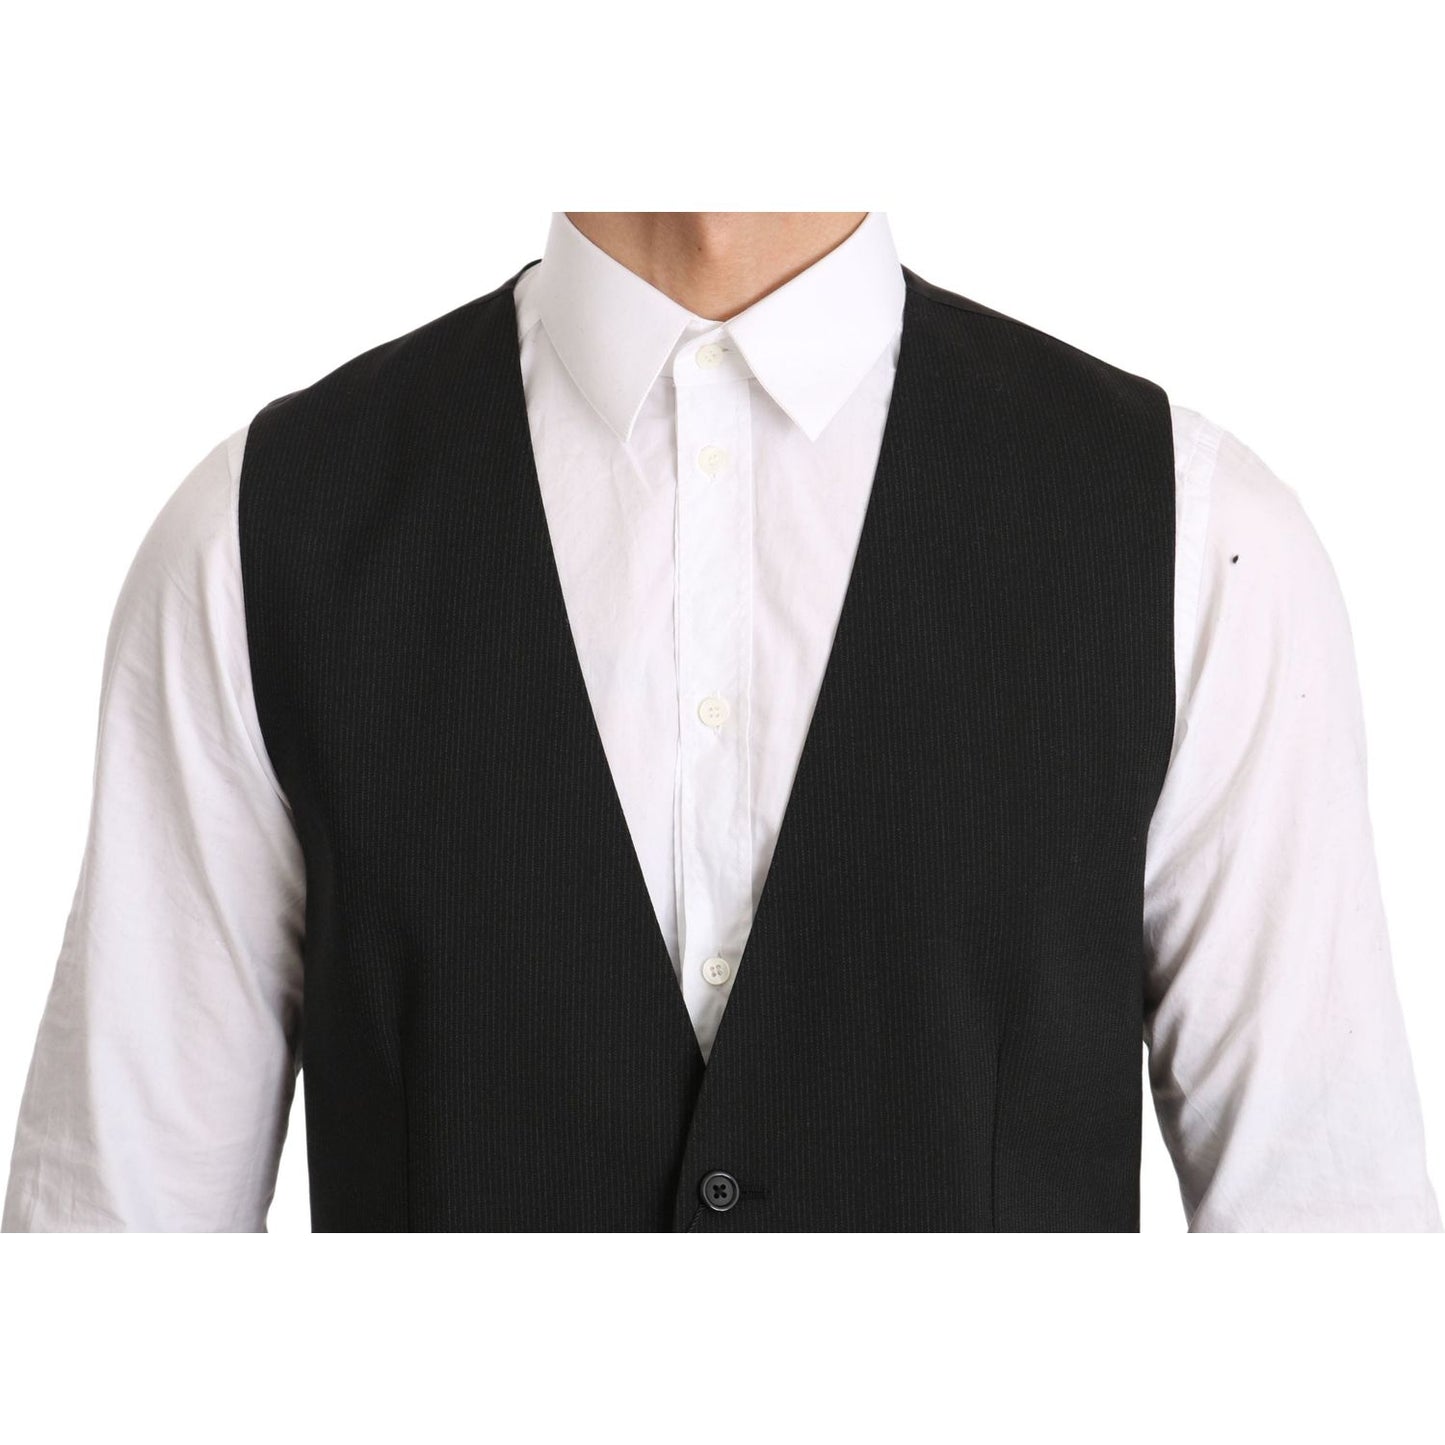 Dolce & Gabbana Elegant Gray Formal Vest - Regular Fit gray-gilet-staff-regular-fit-formal-vest IMG_1781-scaled.jpg